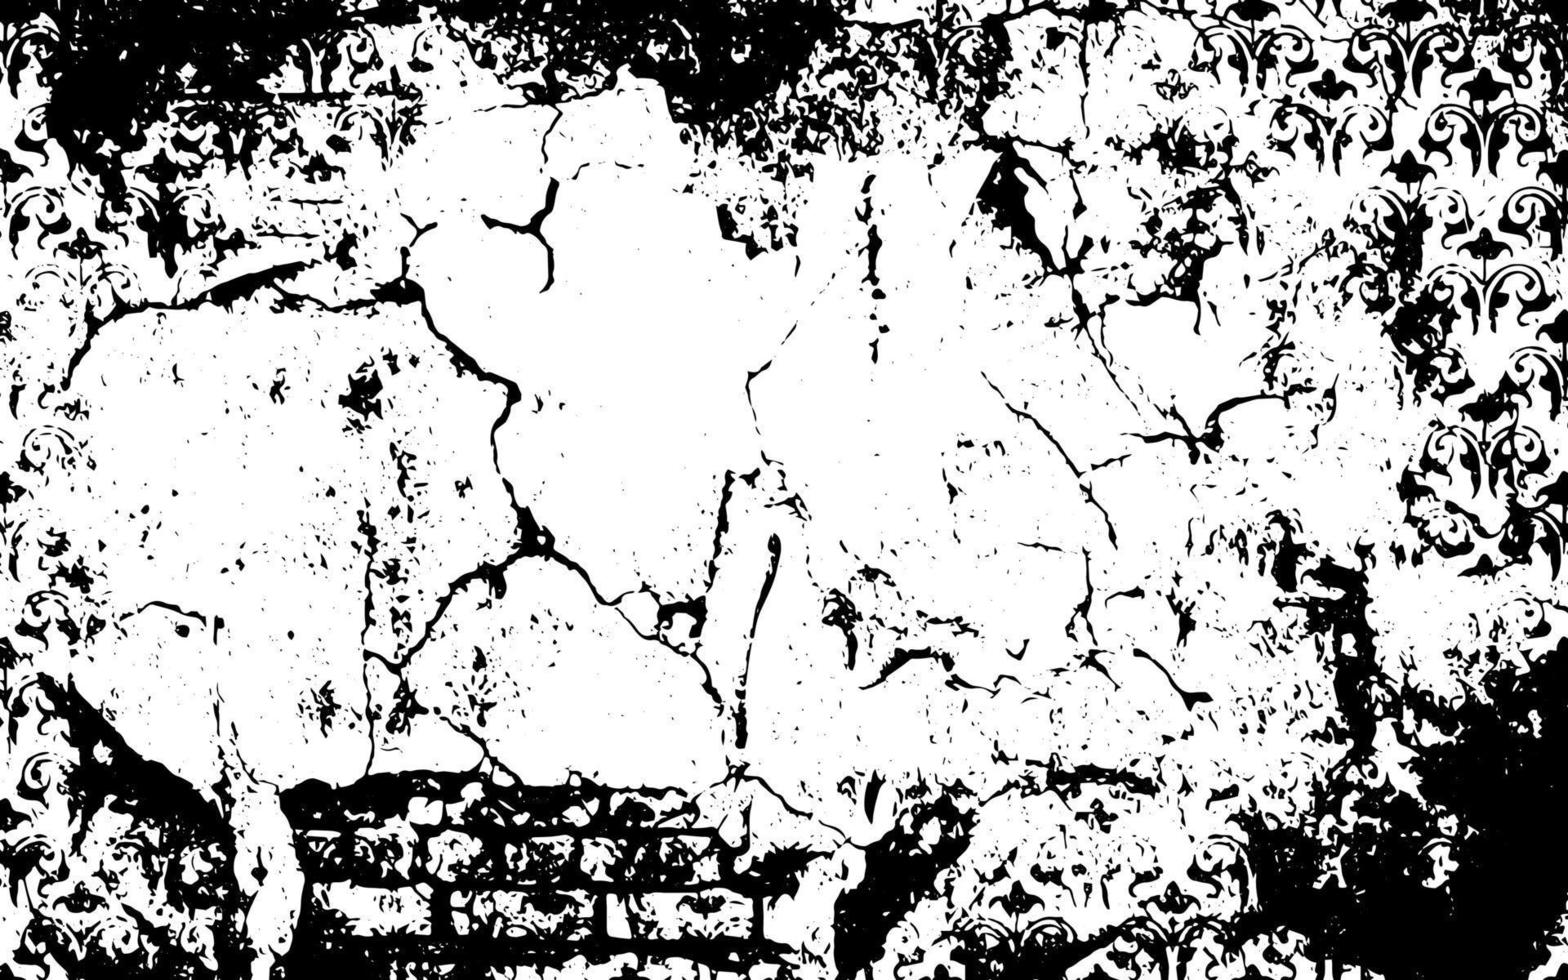 struttura vettoriale rustica incrinata con molte crepe e graffi. sfondo astratto. superficie rotta e danneggiata. sfondo invecchiato.